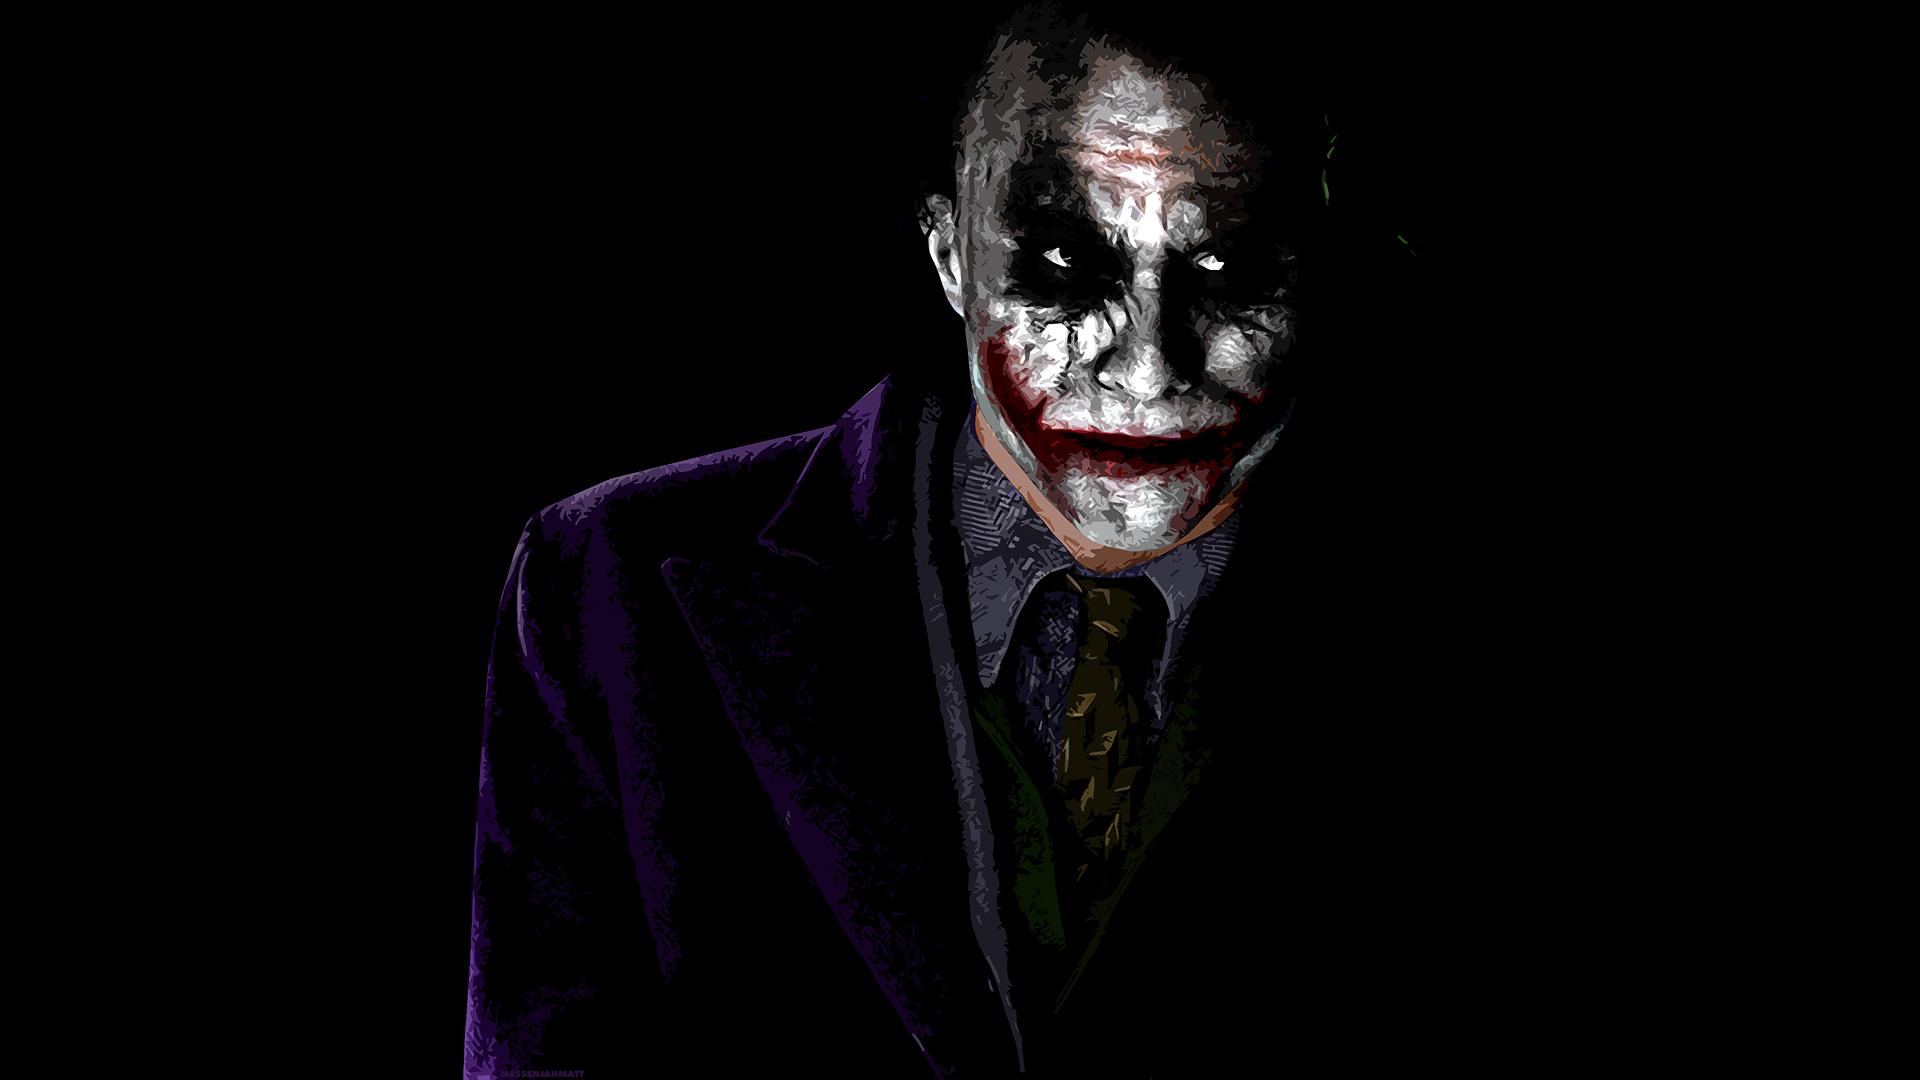 Joker Wallpaper. Batman Joker